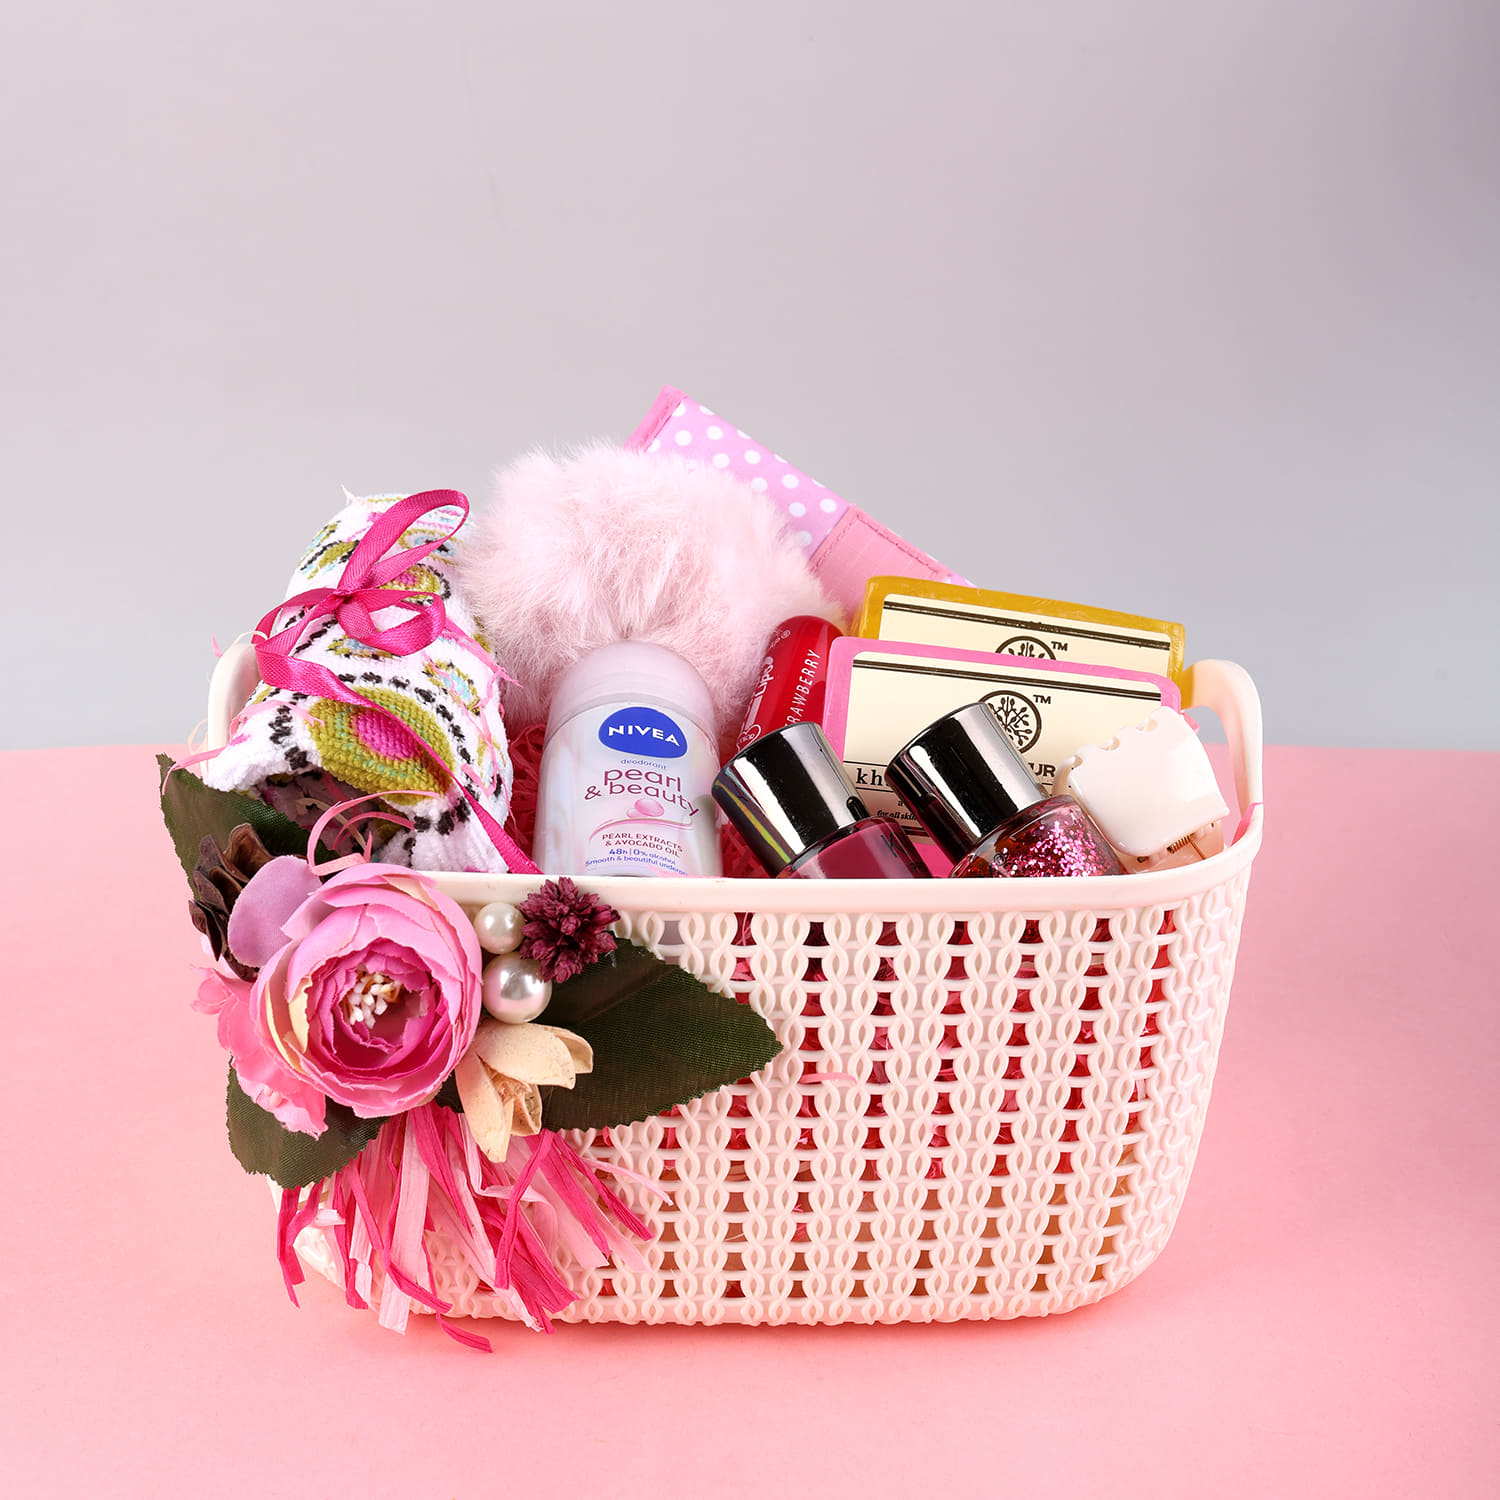 Narciso Rodriguez 3-Pc. For Her Eau de Parfum Gift Set - Macy's